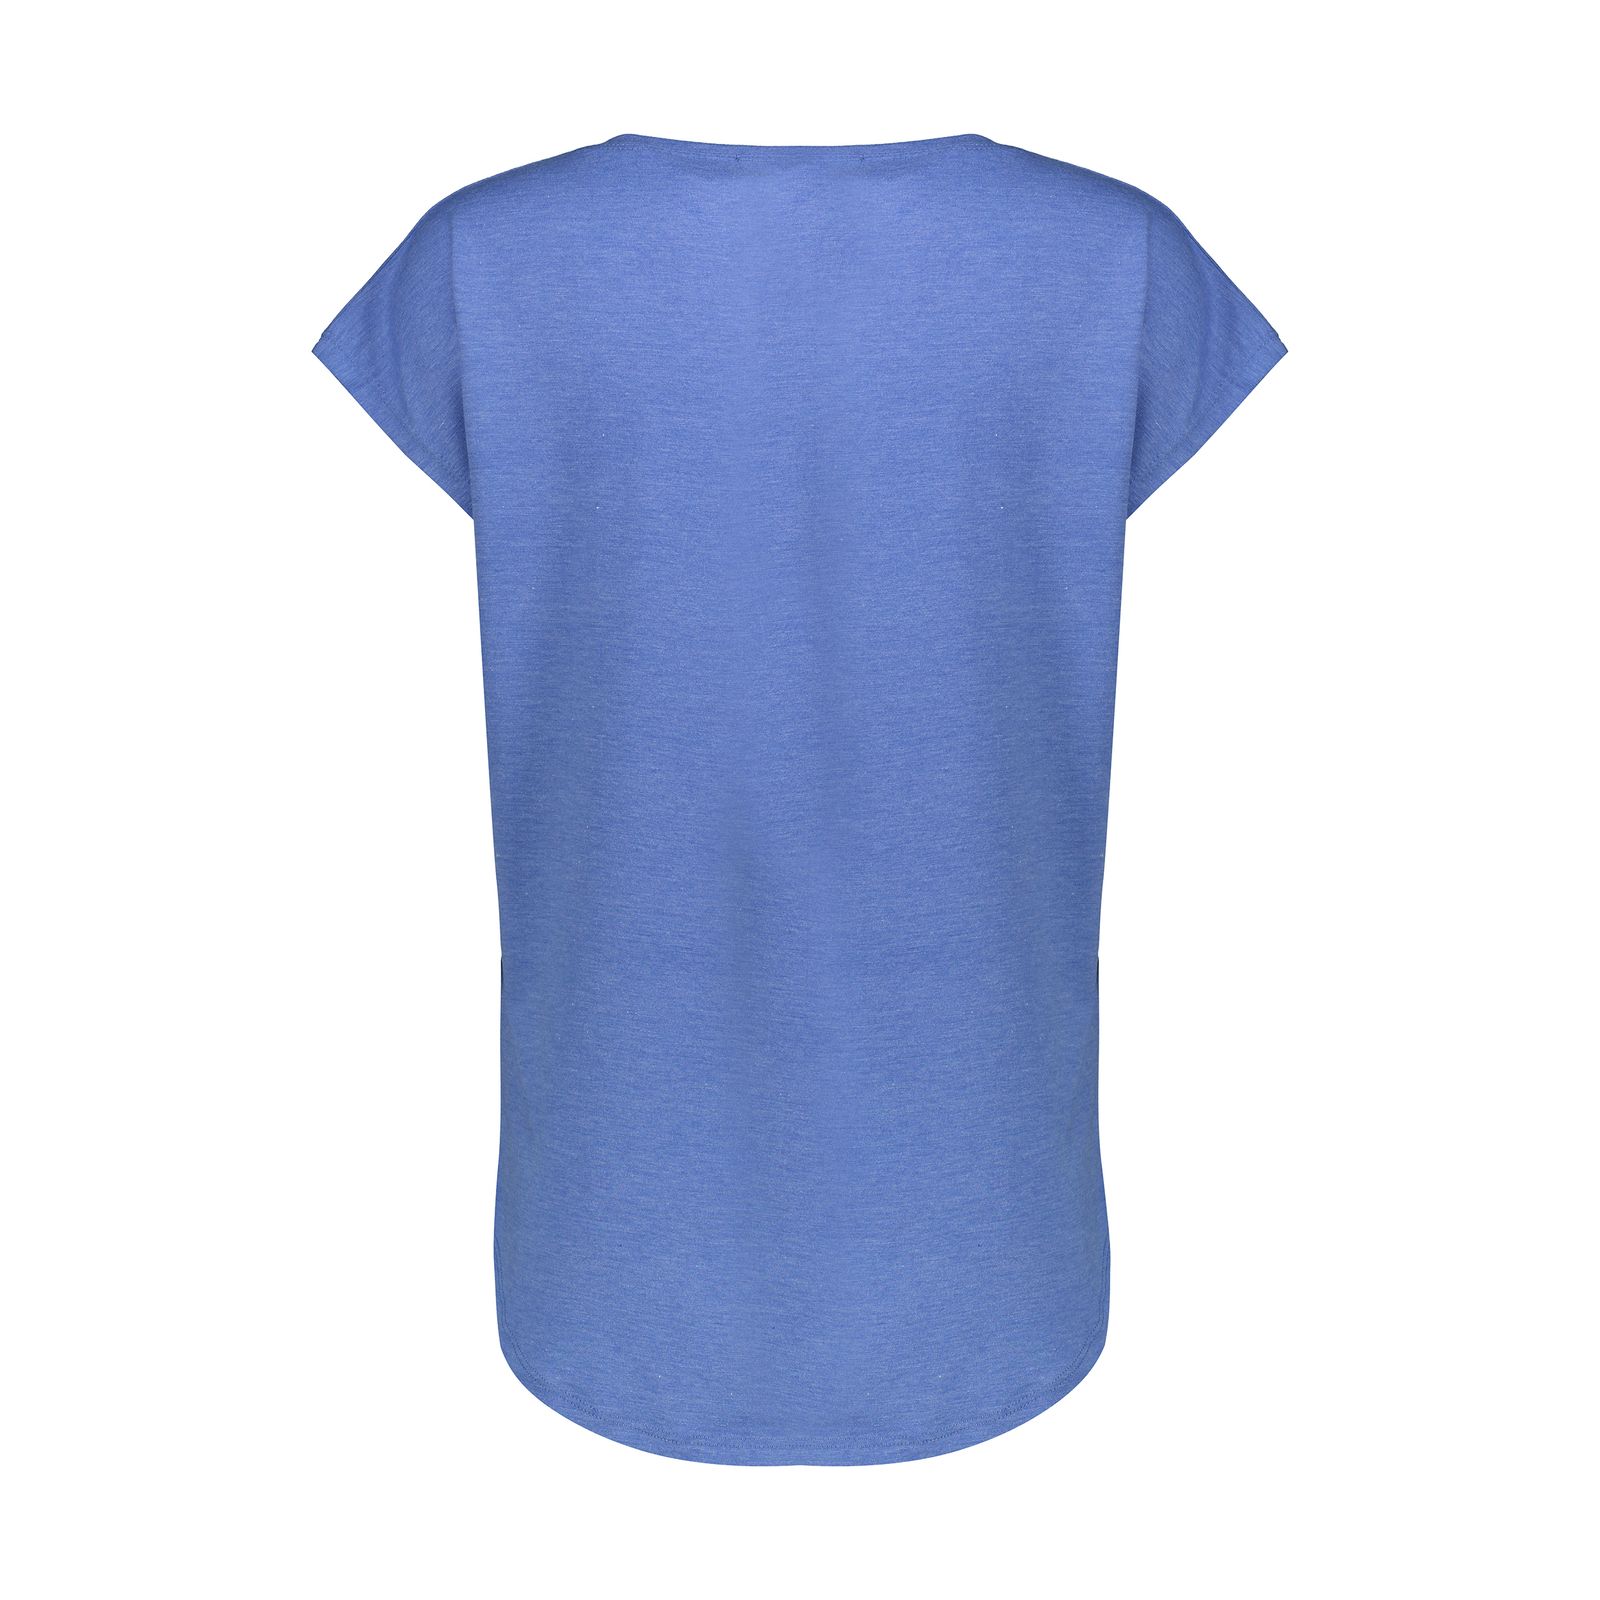 تی شرت زنانه افراتین کد 2551 رنگ آبی -  - 4